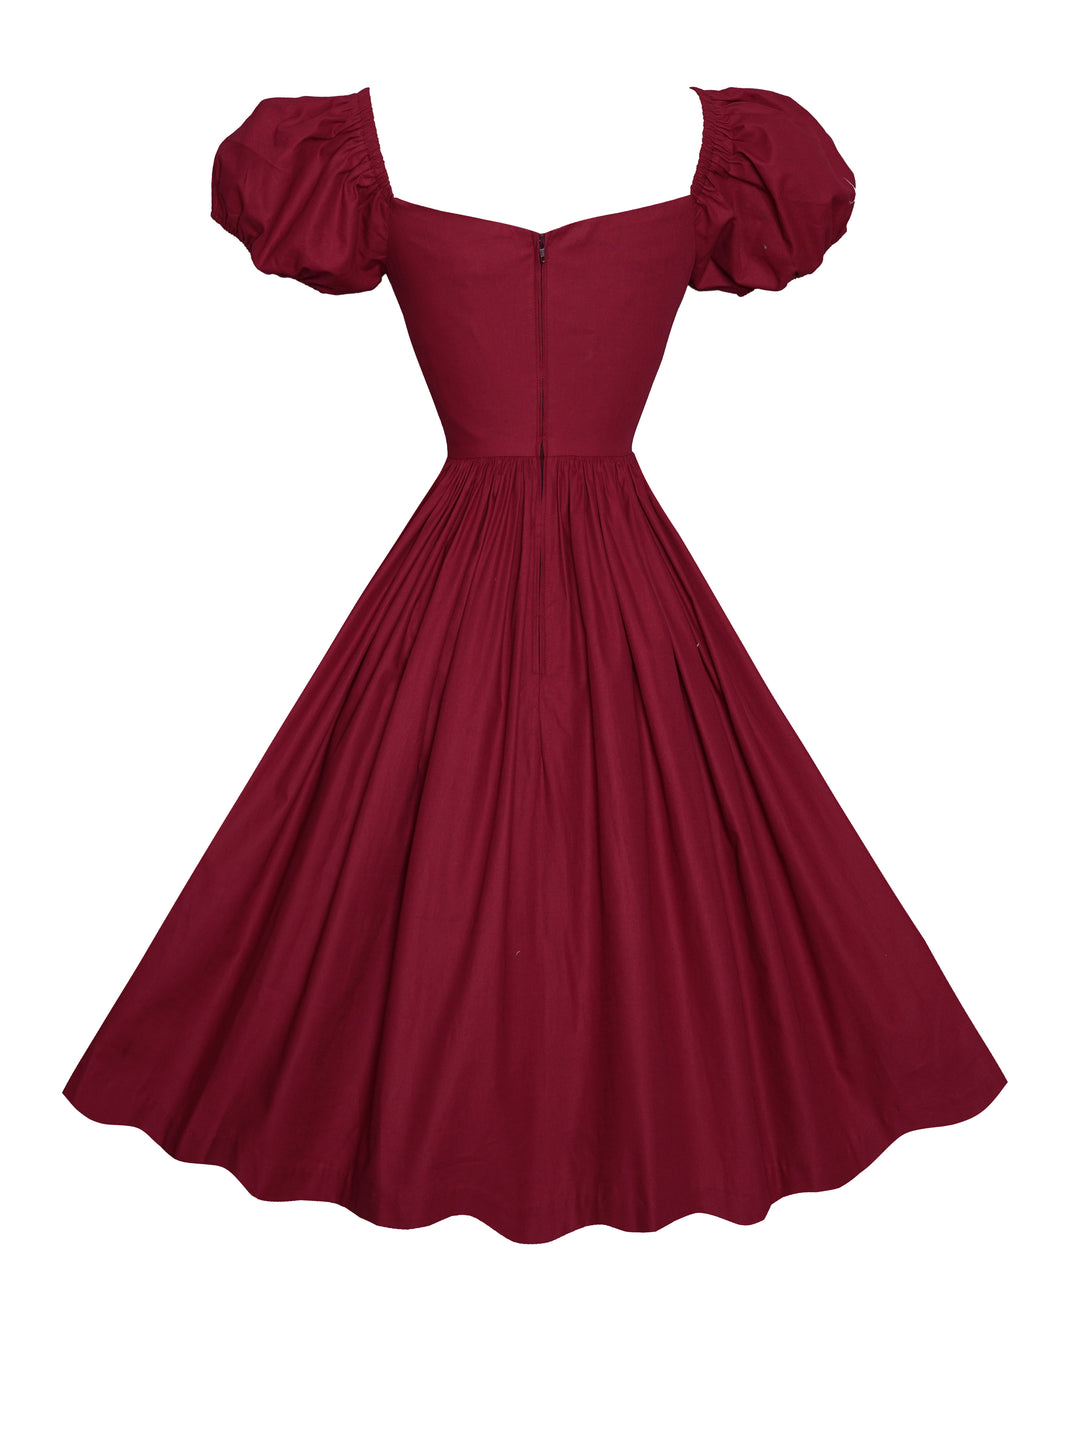 MTO - Dottie Dress in Burgundy Cotton